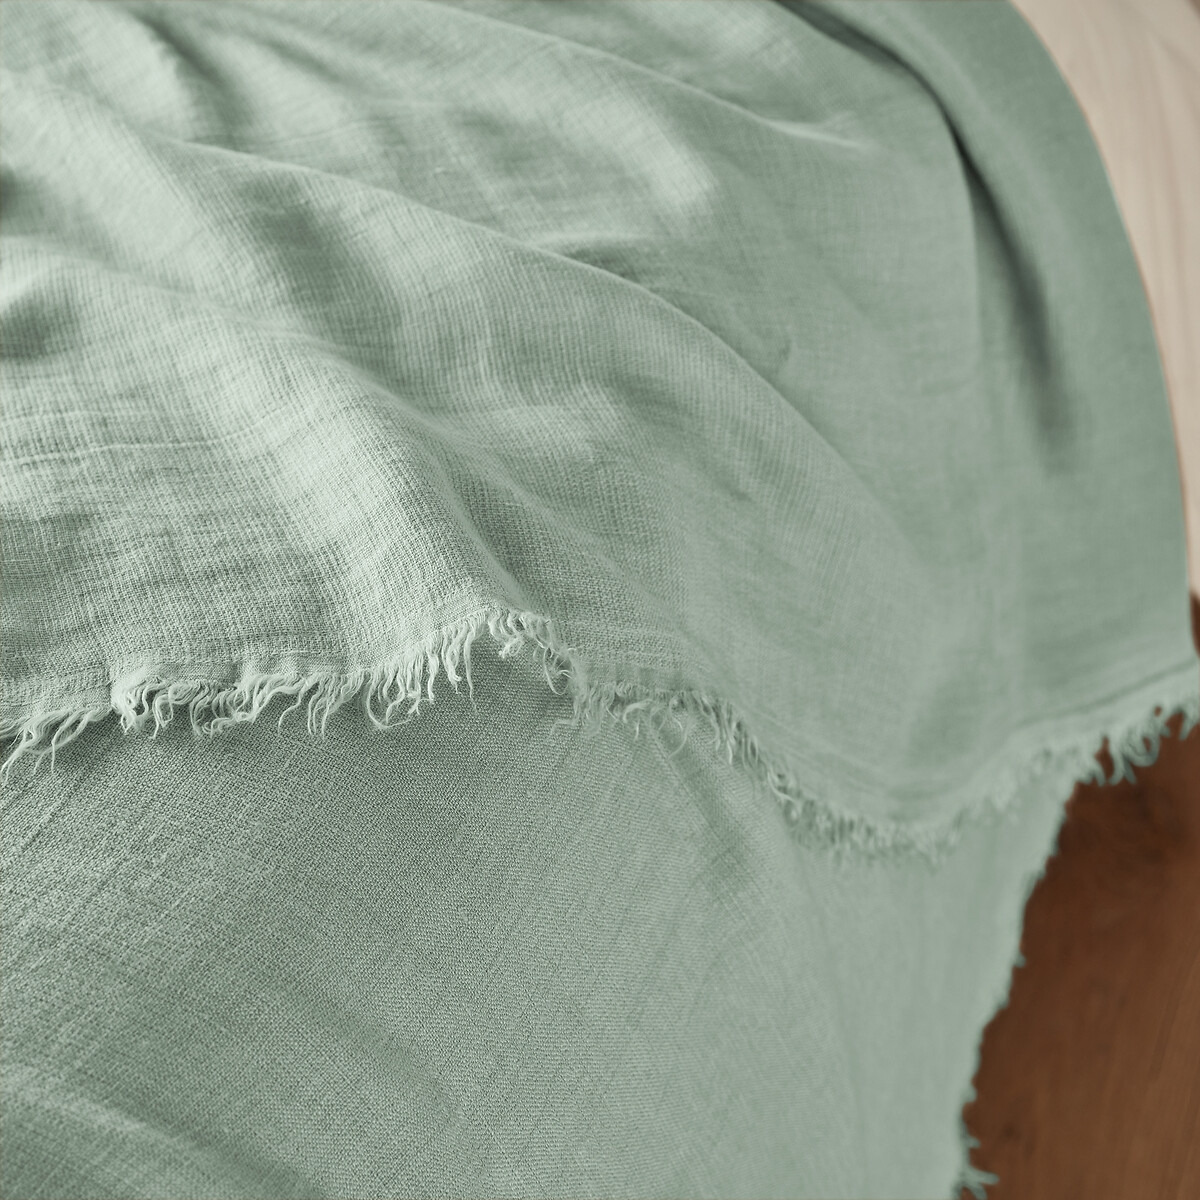 Linange Washed Linen Bedspread - image 1